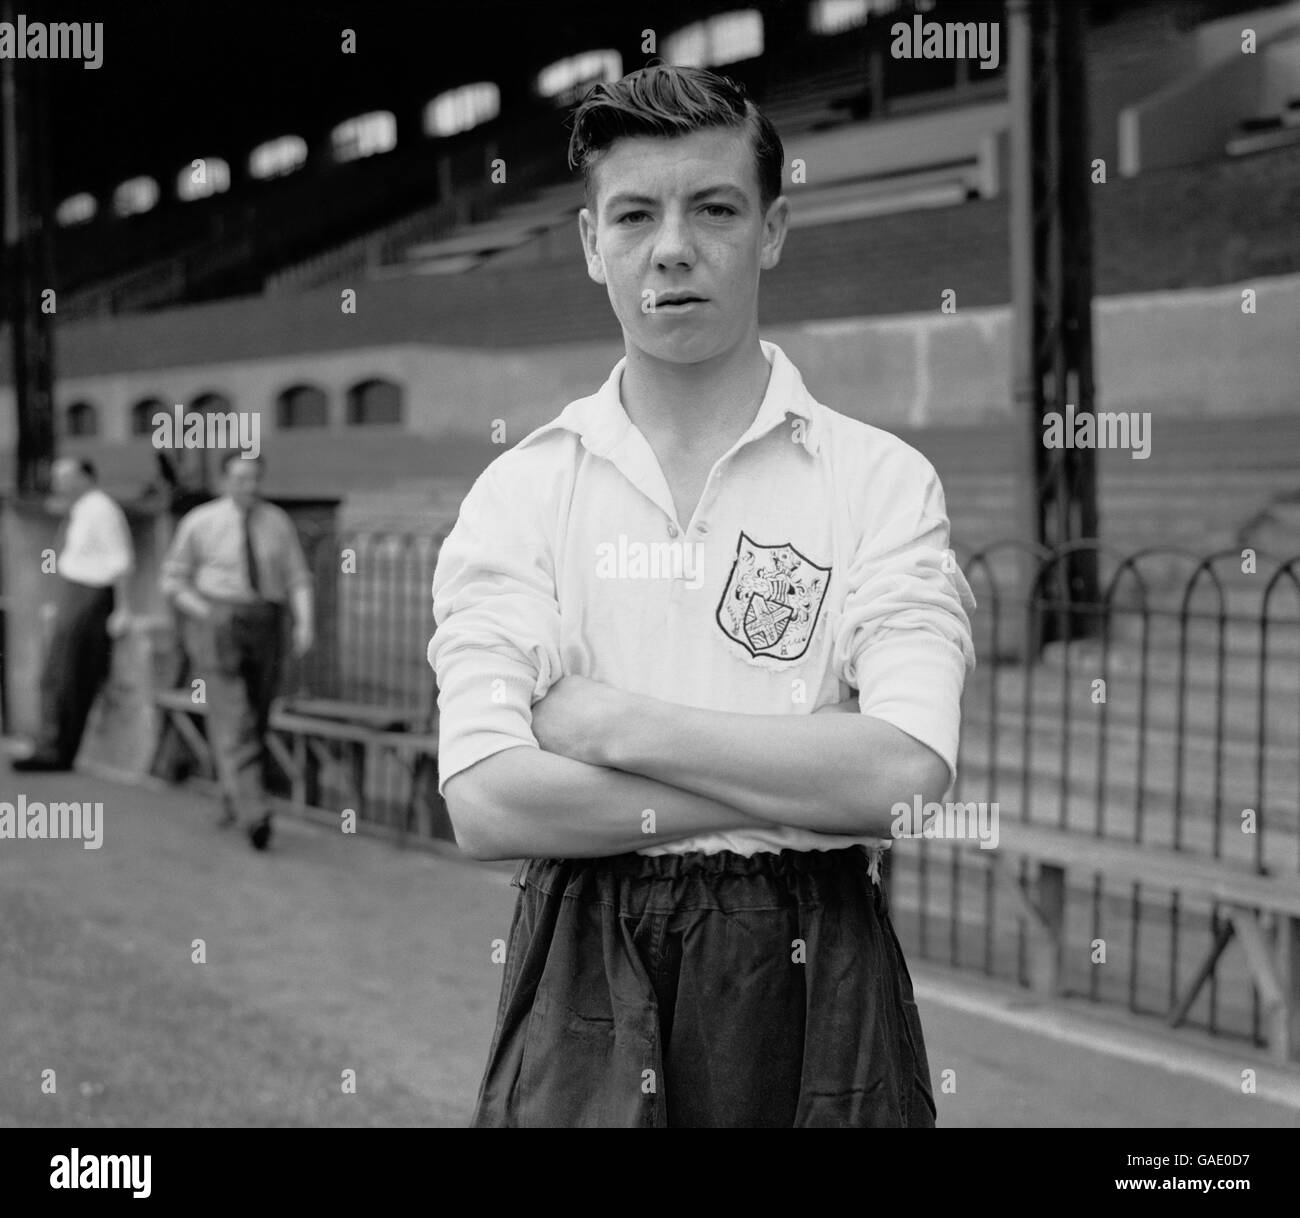 Fußball - Division One - Fulham - Johnny Haynes - 1950. Der 15-jährige Johnny Haynes vom Fulham Football Club. Stockfoto